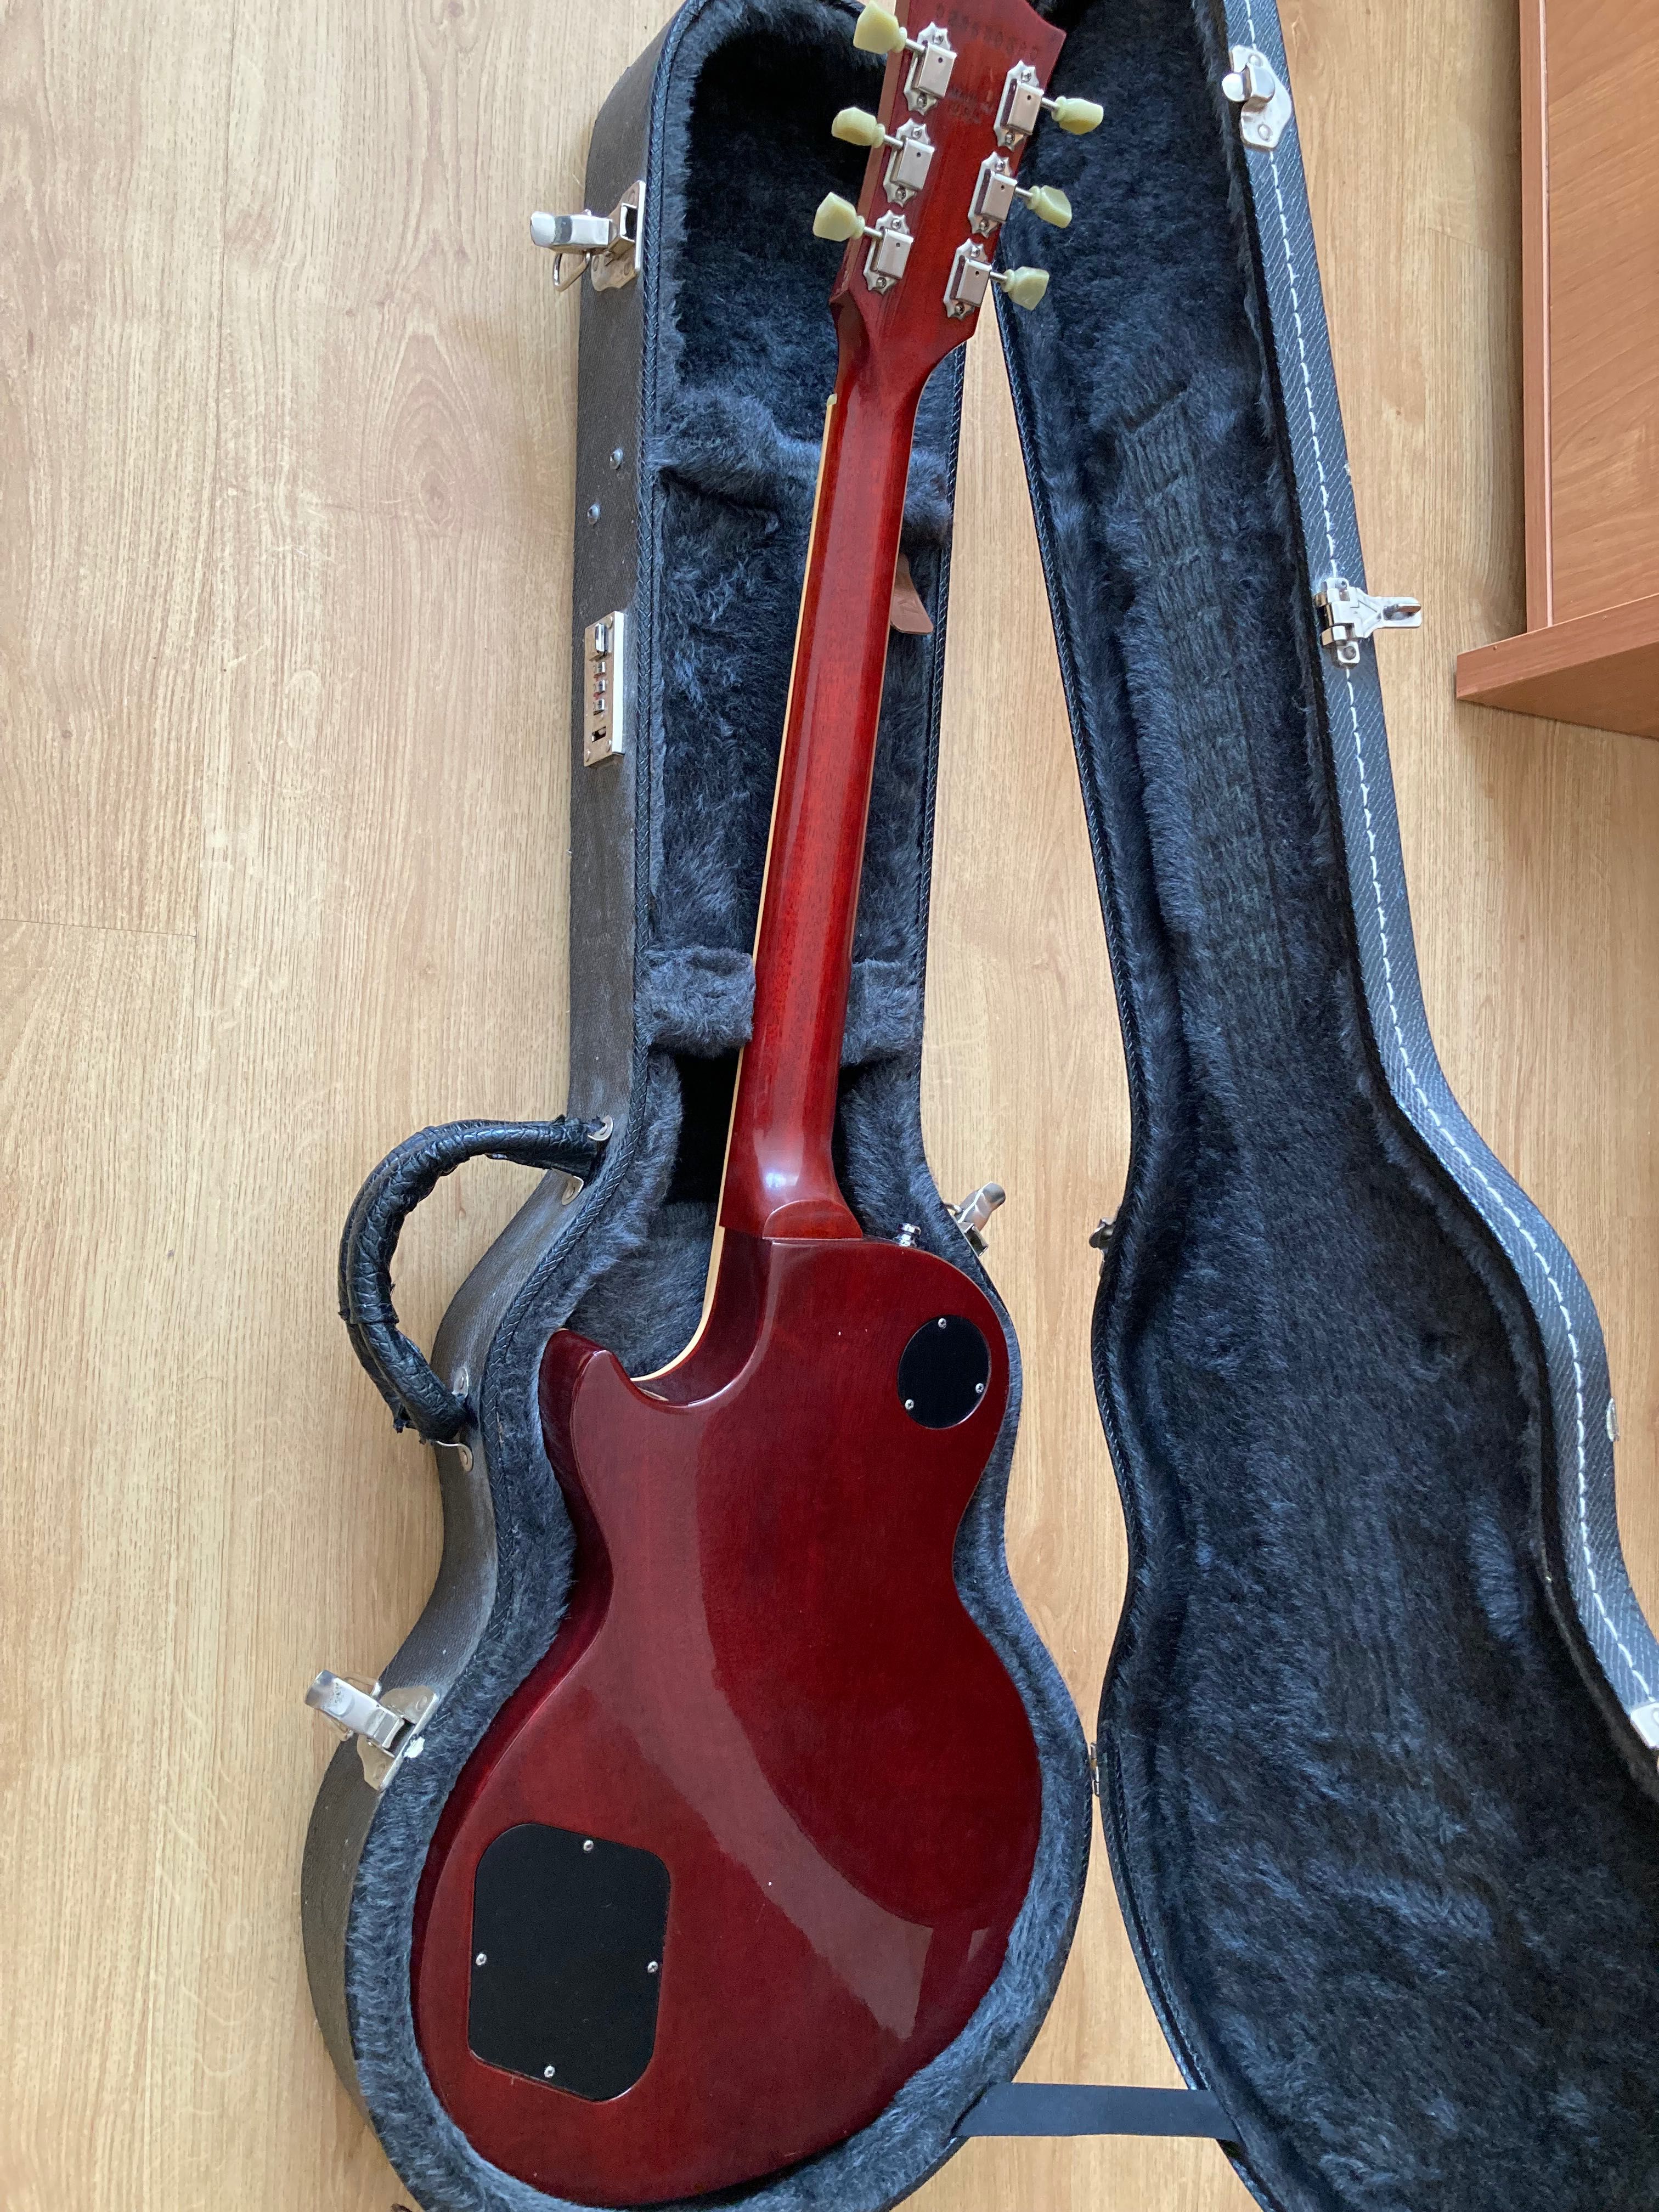 Gibson Les Paul Standard 2005 Cherry Burst